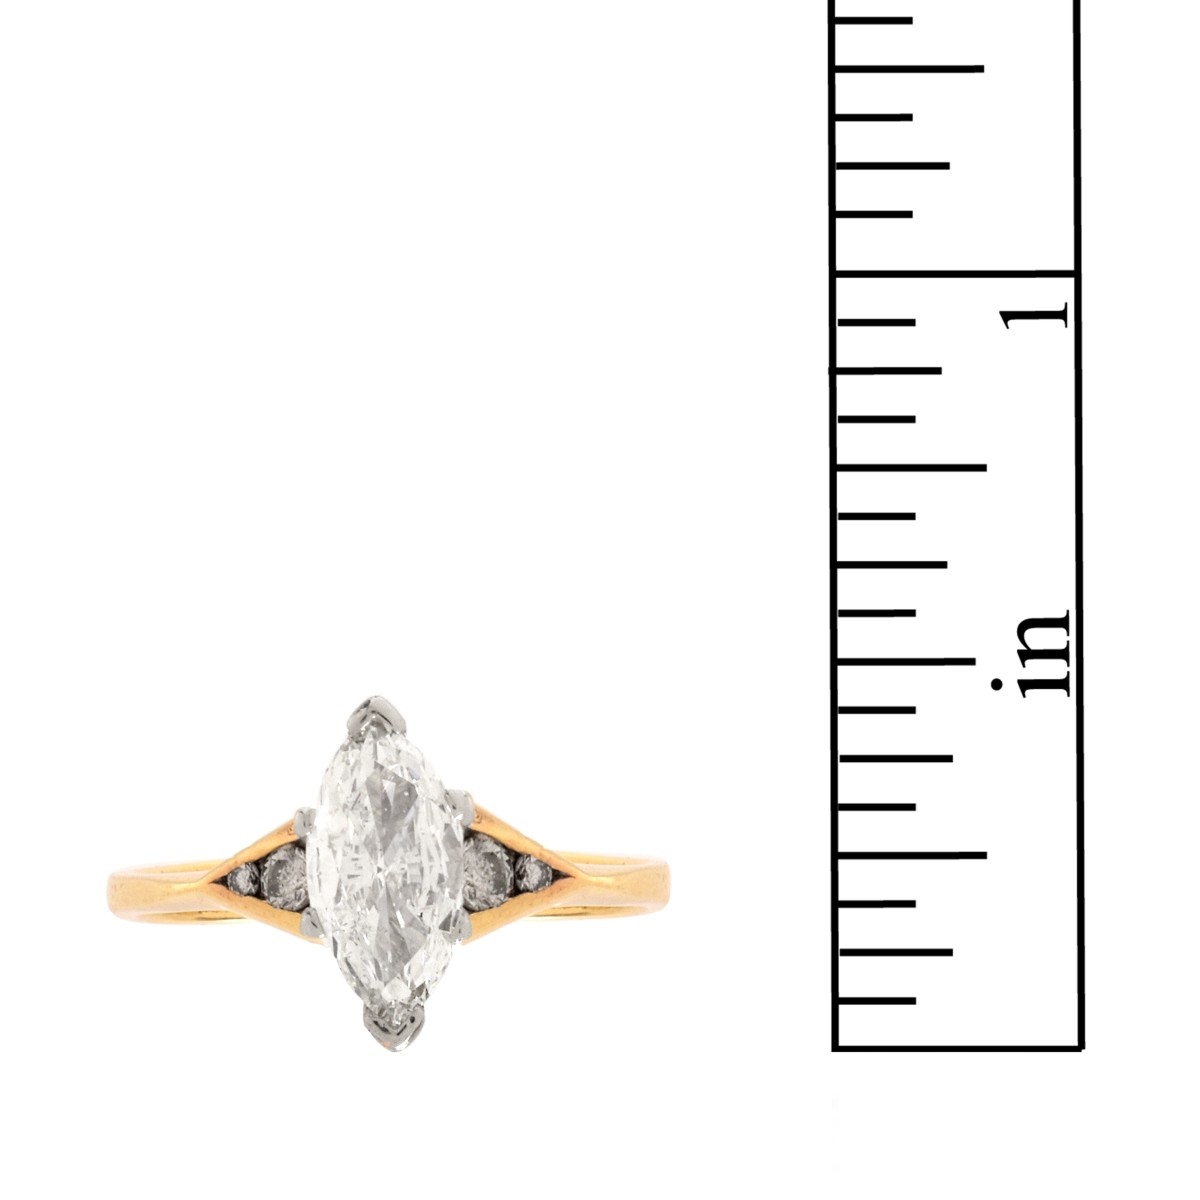 GIA Diamond and 14K Ring